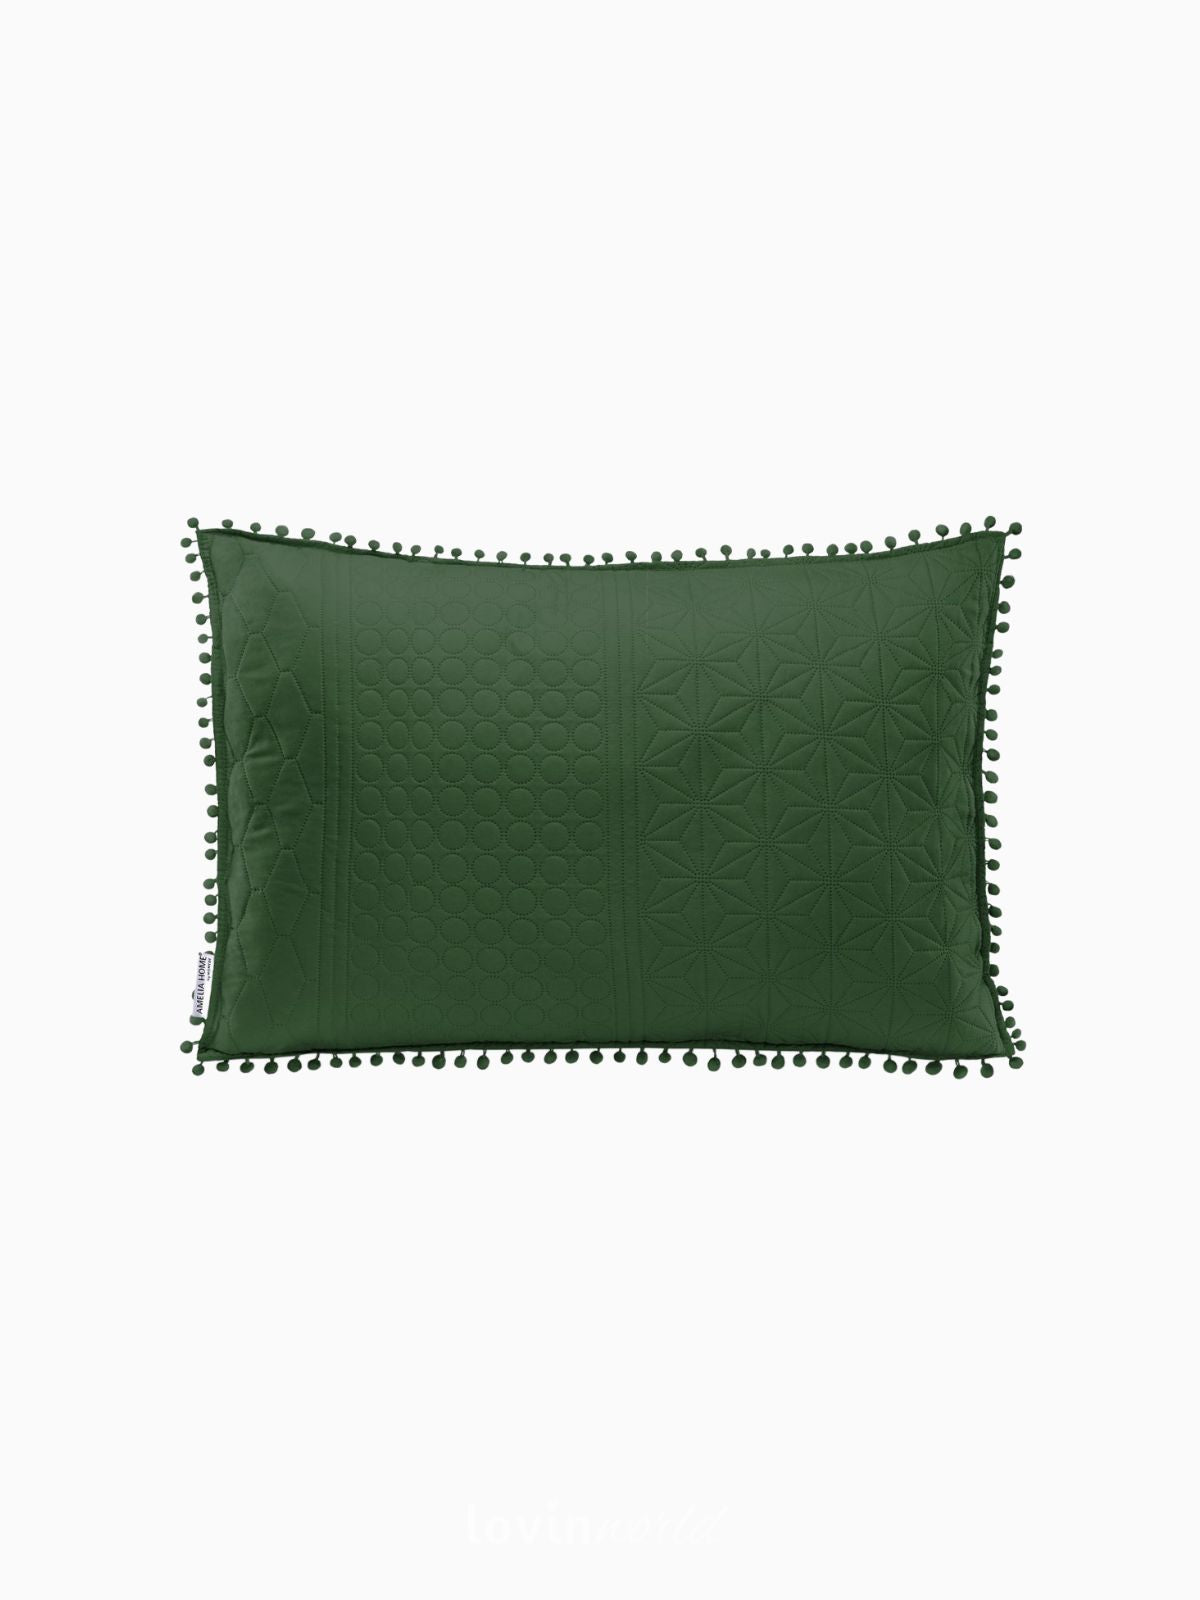 Cuscino decorativo Meadore in colore verde 50x70 cm.-1